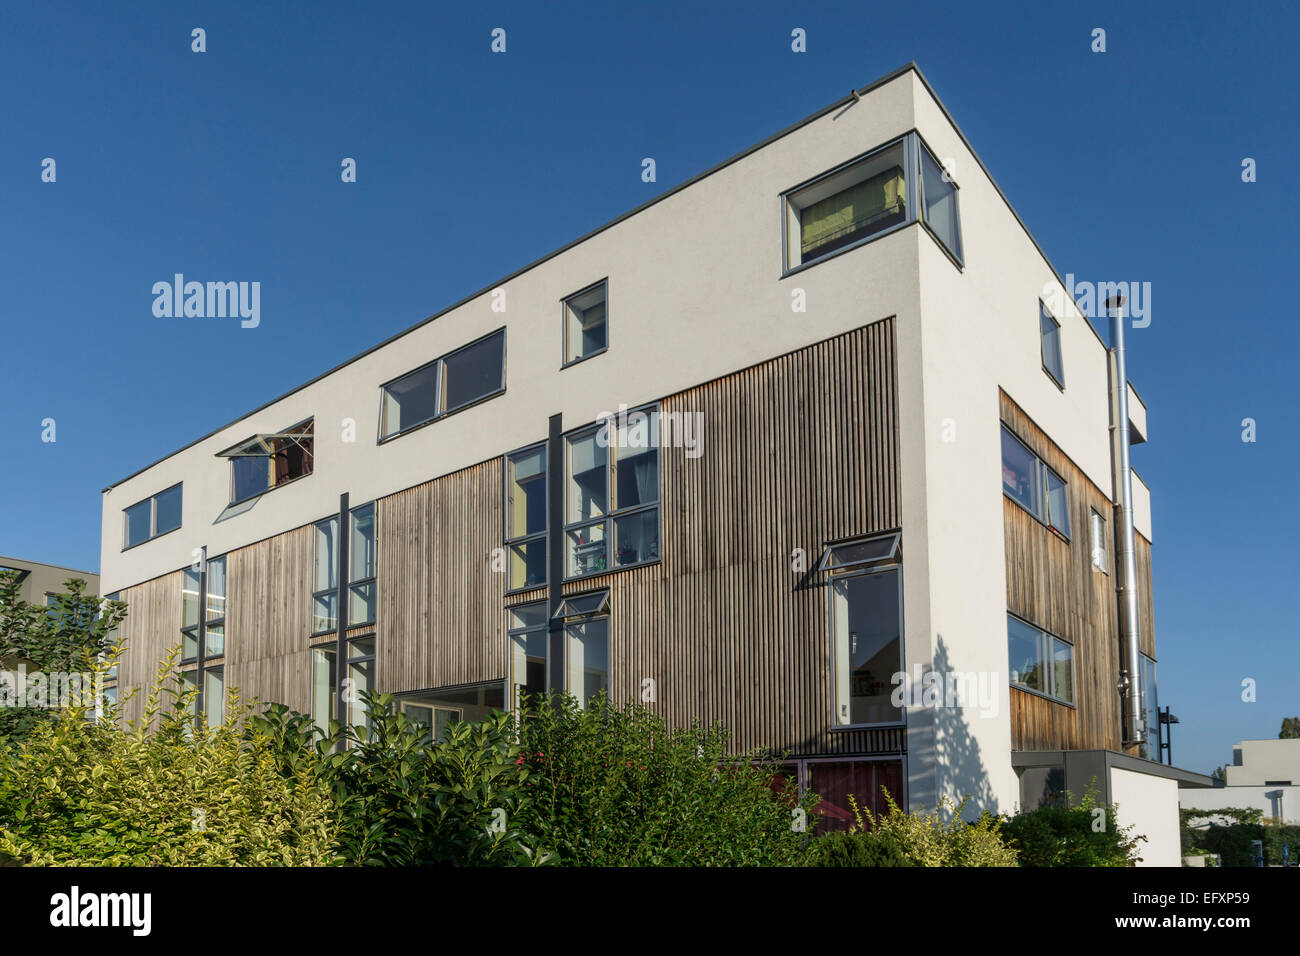 L'architecture moderne, de l'immobilier, Rummelsburger Bucht, Berlin, Allemagne Banque D'Images